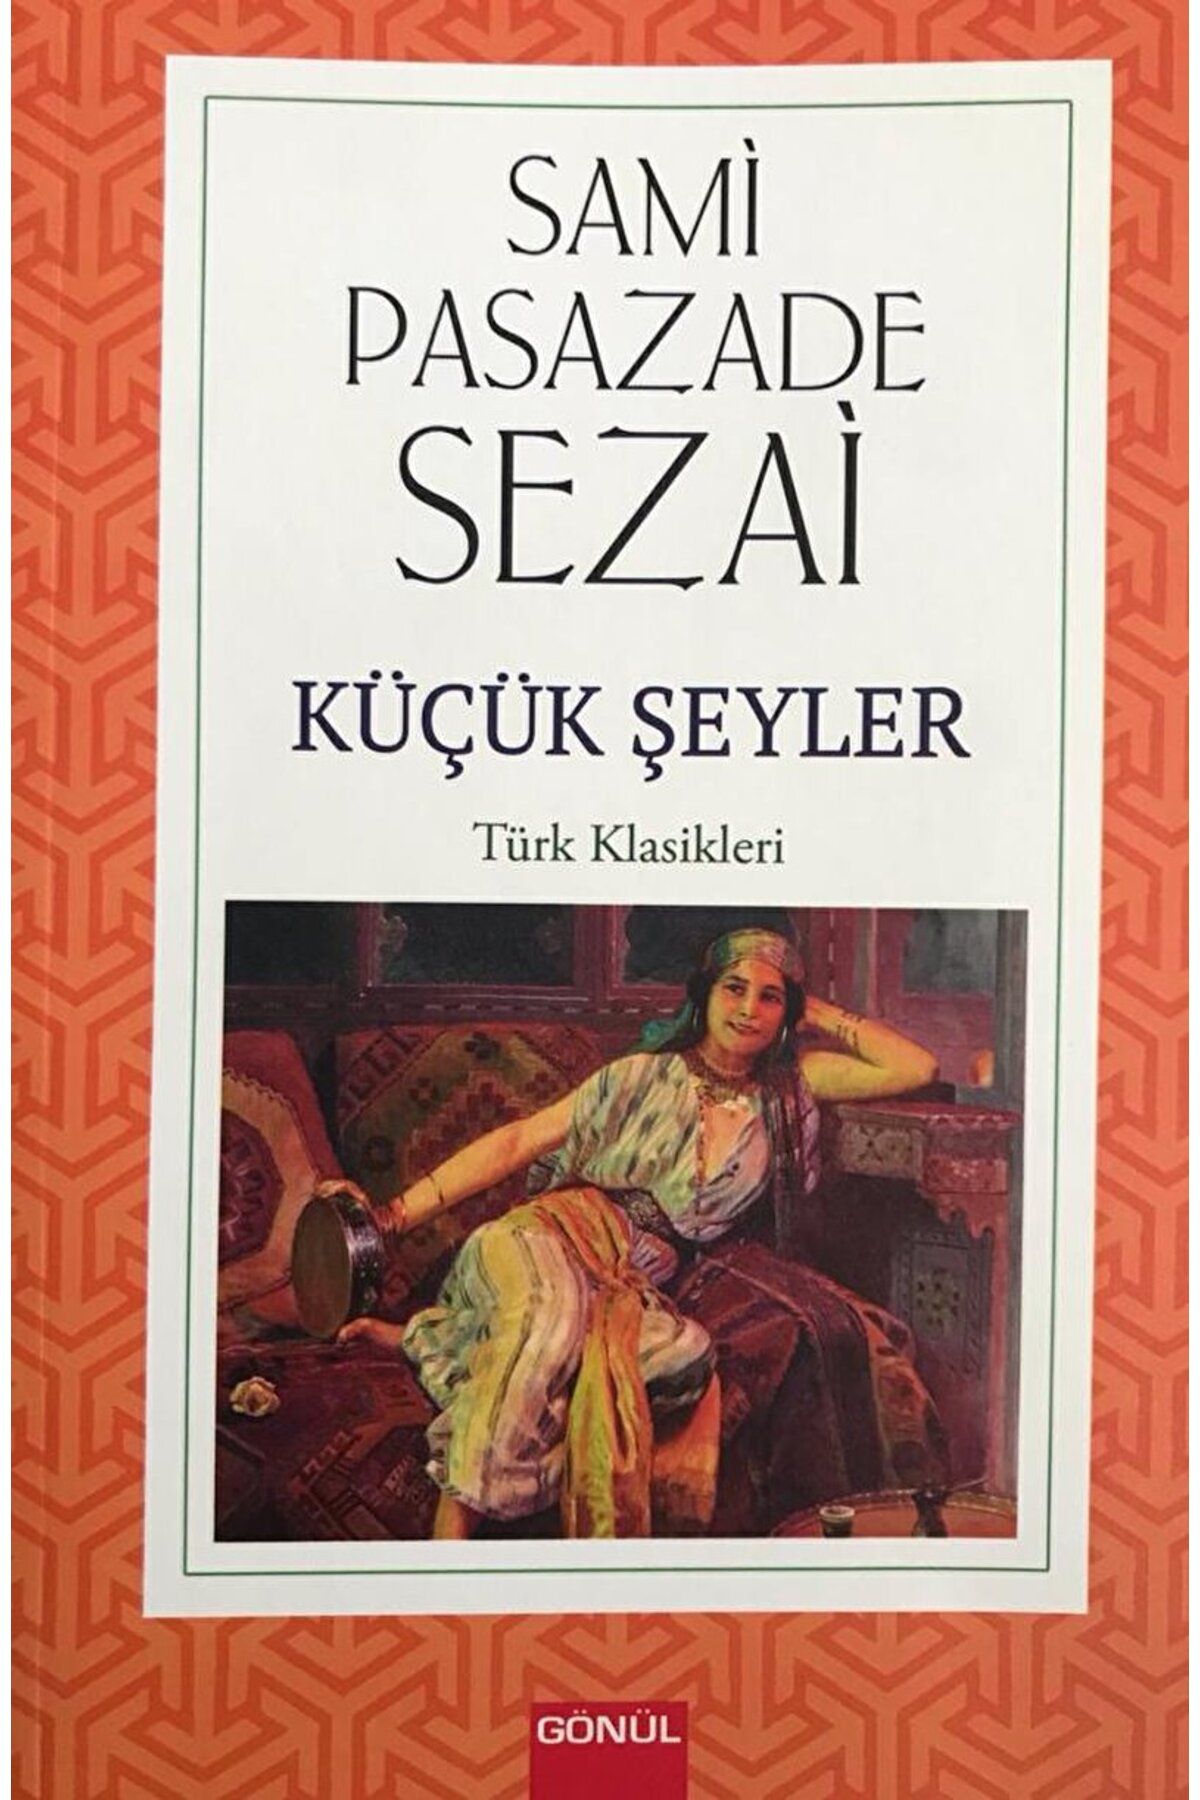 GÖNÜL YAYINCILIK Küçük Şeyler / Sami Paşazade Sezai / Gönül Yayıncılık / 9786258198270